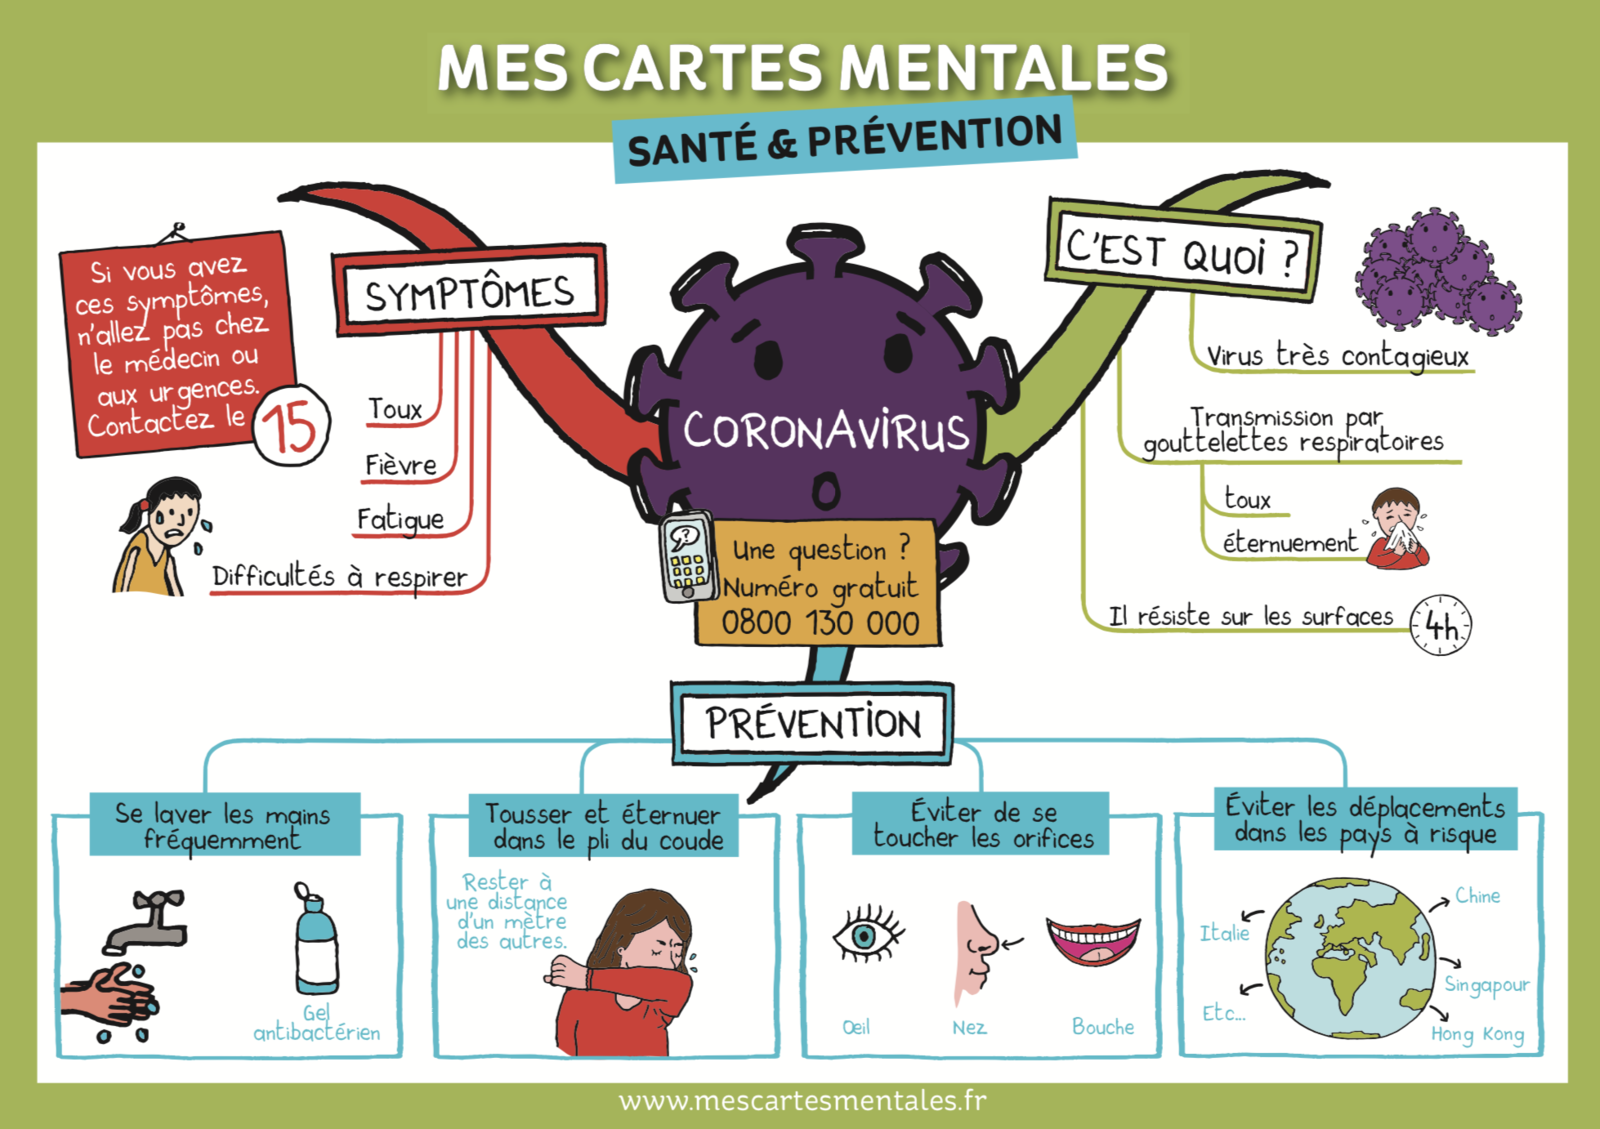 Source: www.mescartesmentales.fr/unecartementale/coronavirus-explique-aux-enfants/